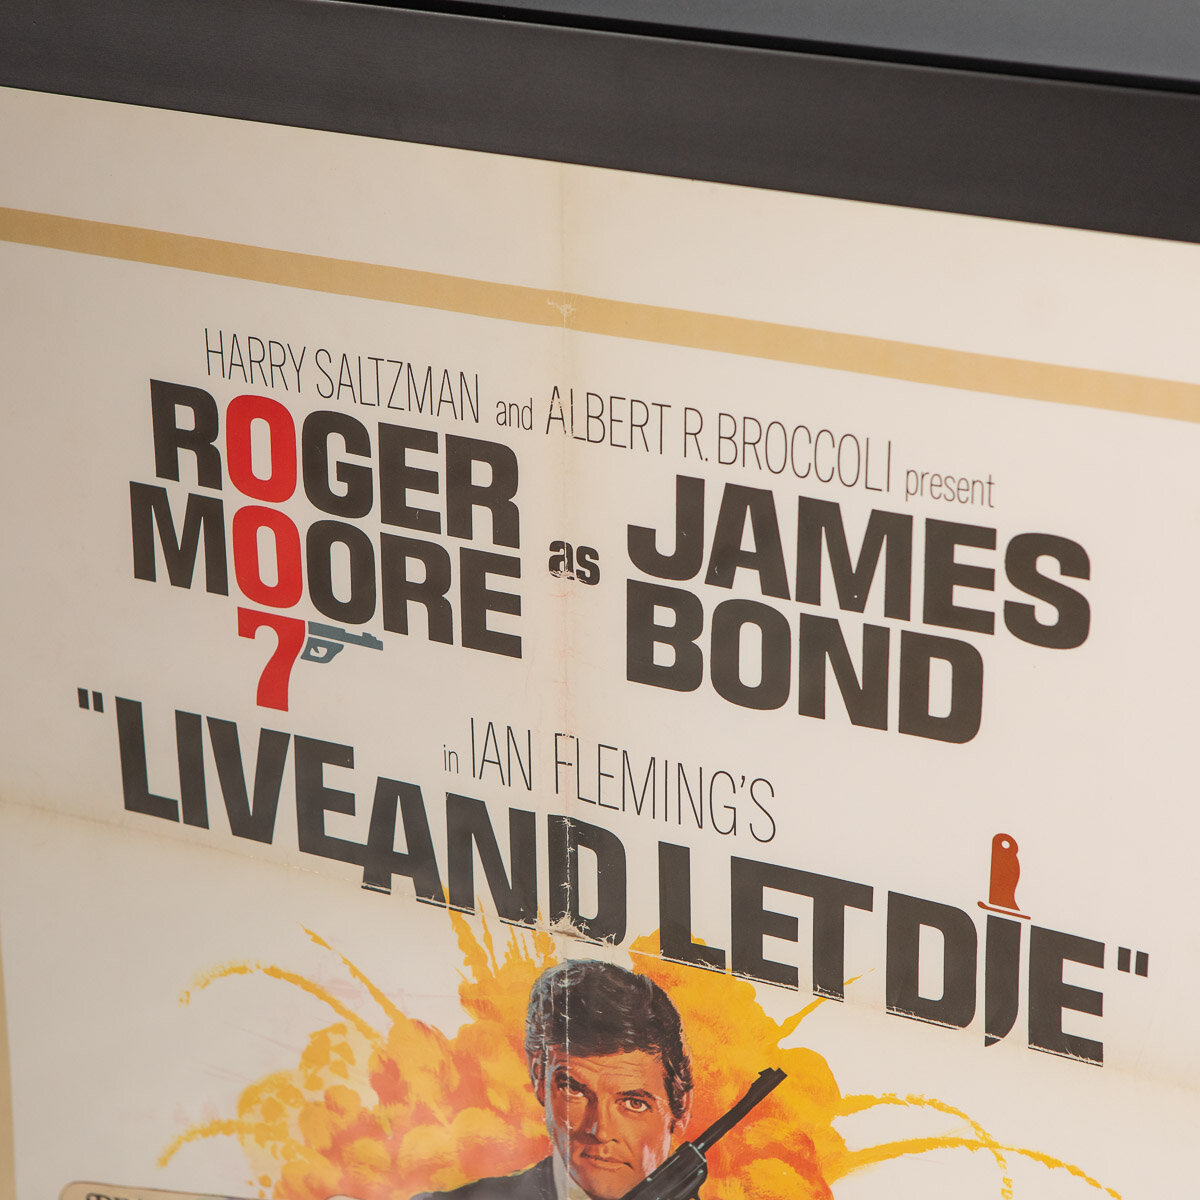 James Bond 007 #70670 15x10cm Live And Let Die Postkarte 